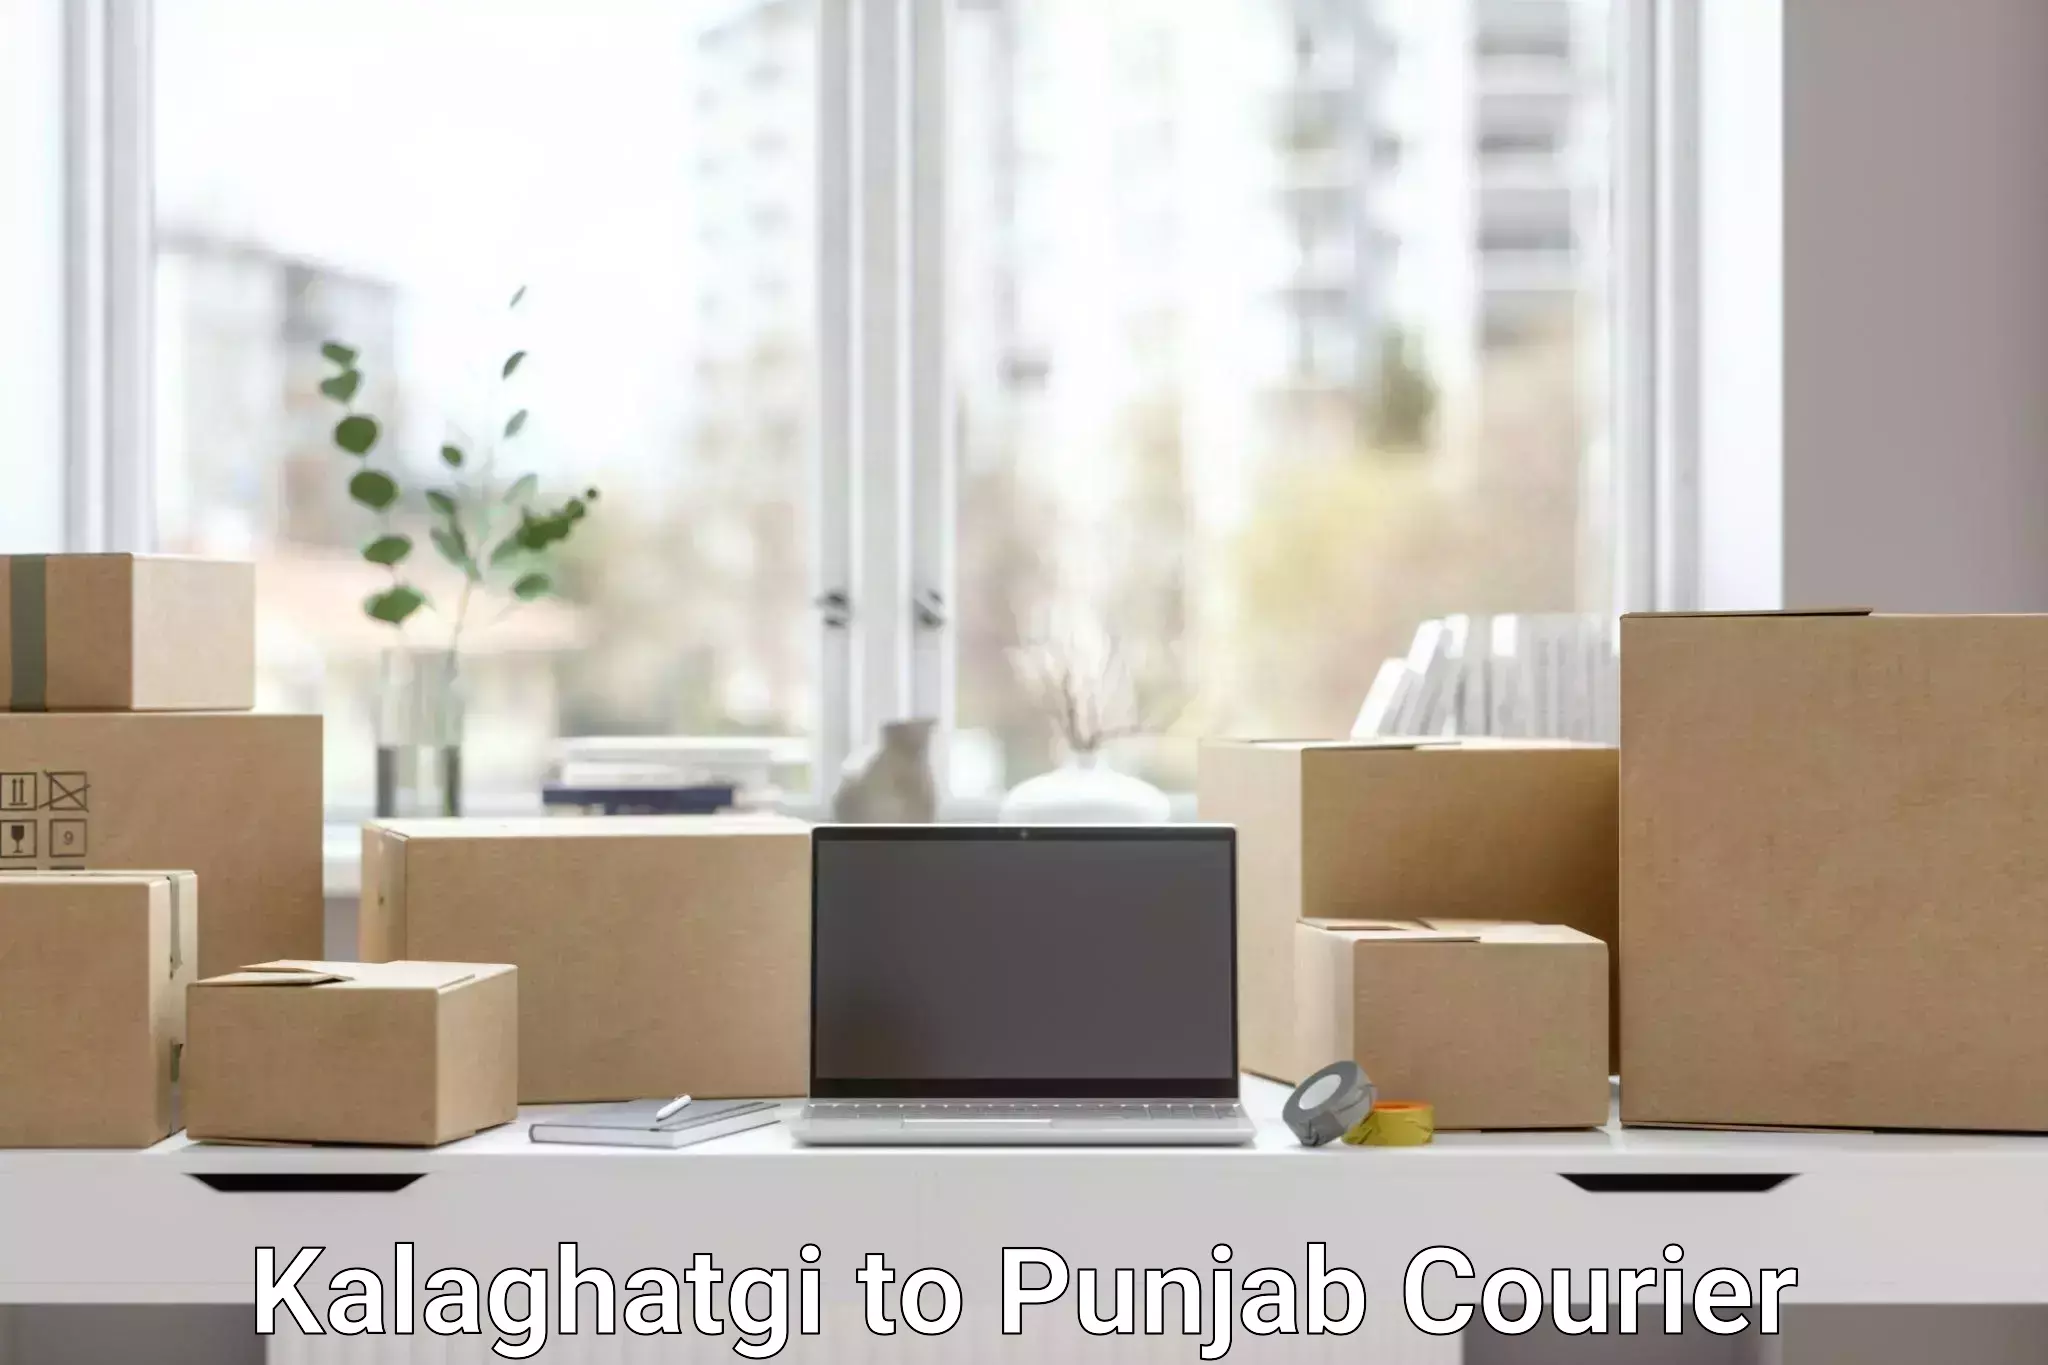 Logistics solutions Kalaghatgi to Punjab